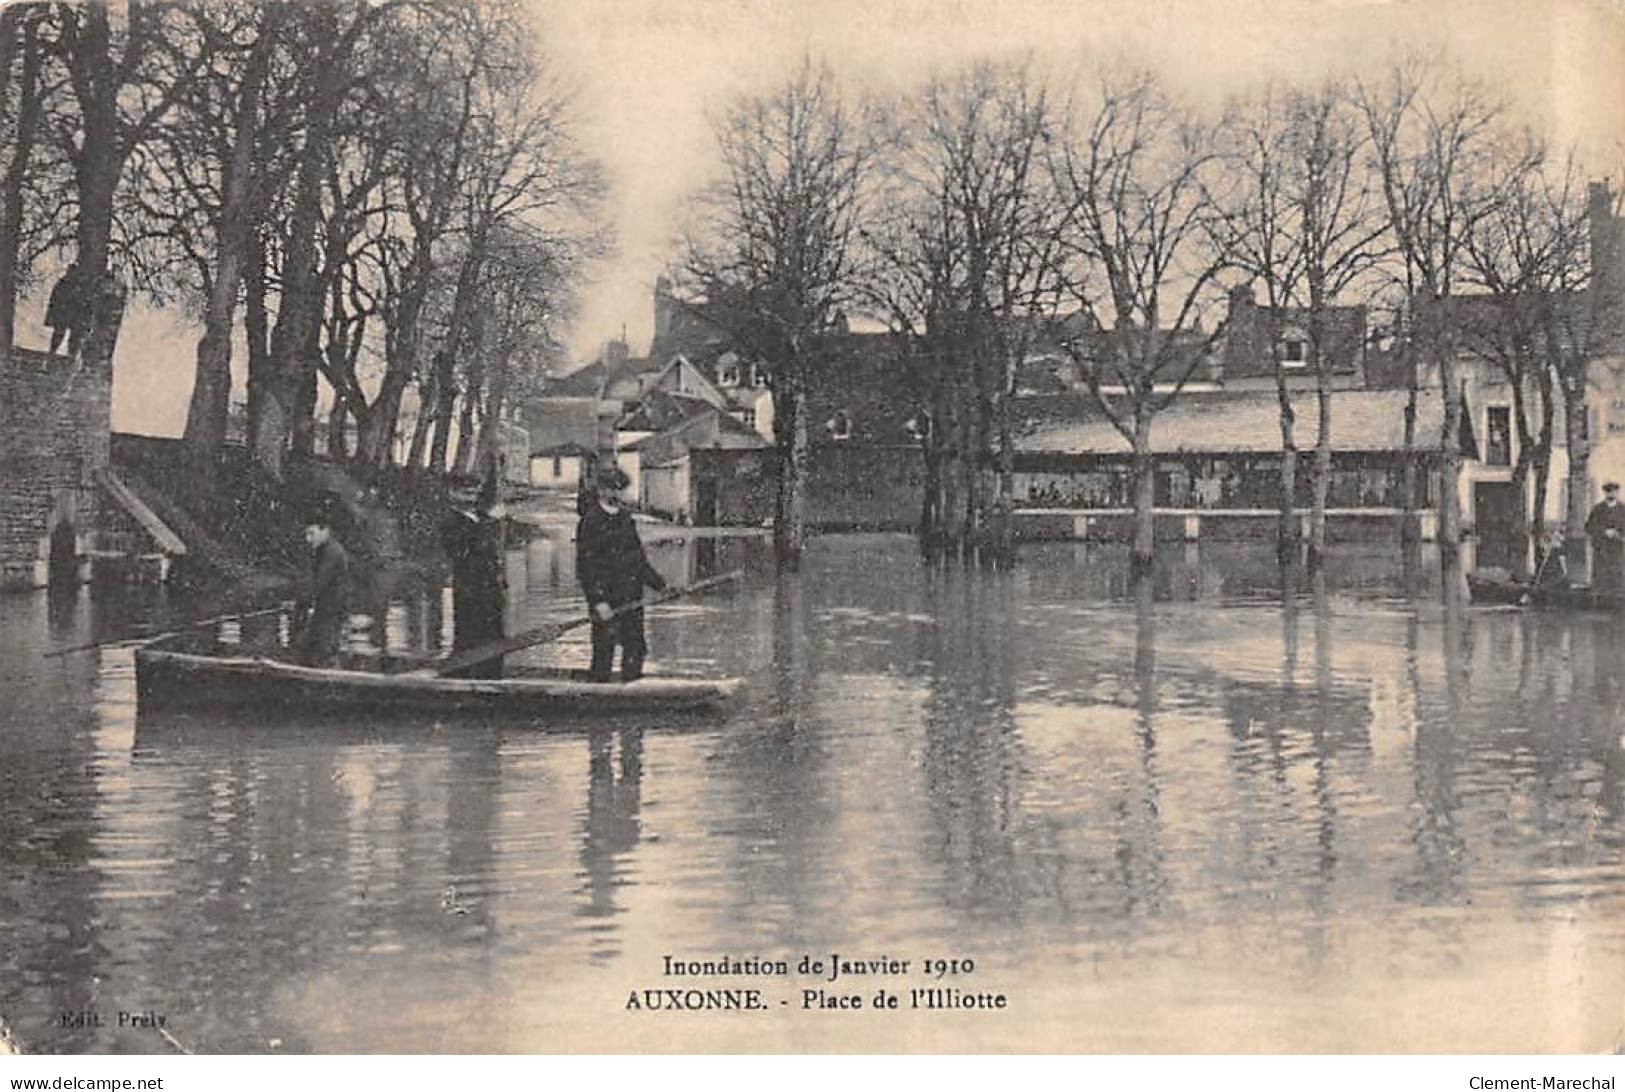 AUXONNE - Inondation De Janvier 1910 - Place De L'Illiotte - Très Bon état - Auxonne